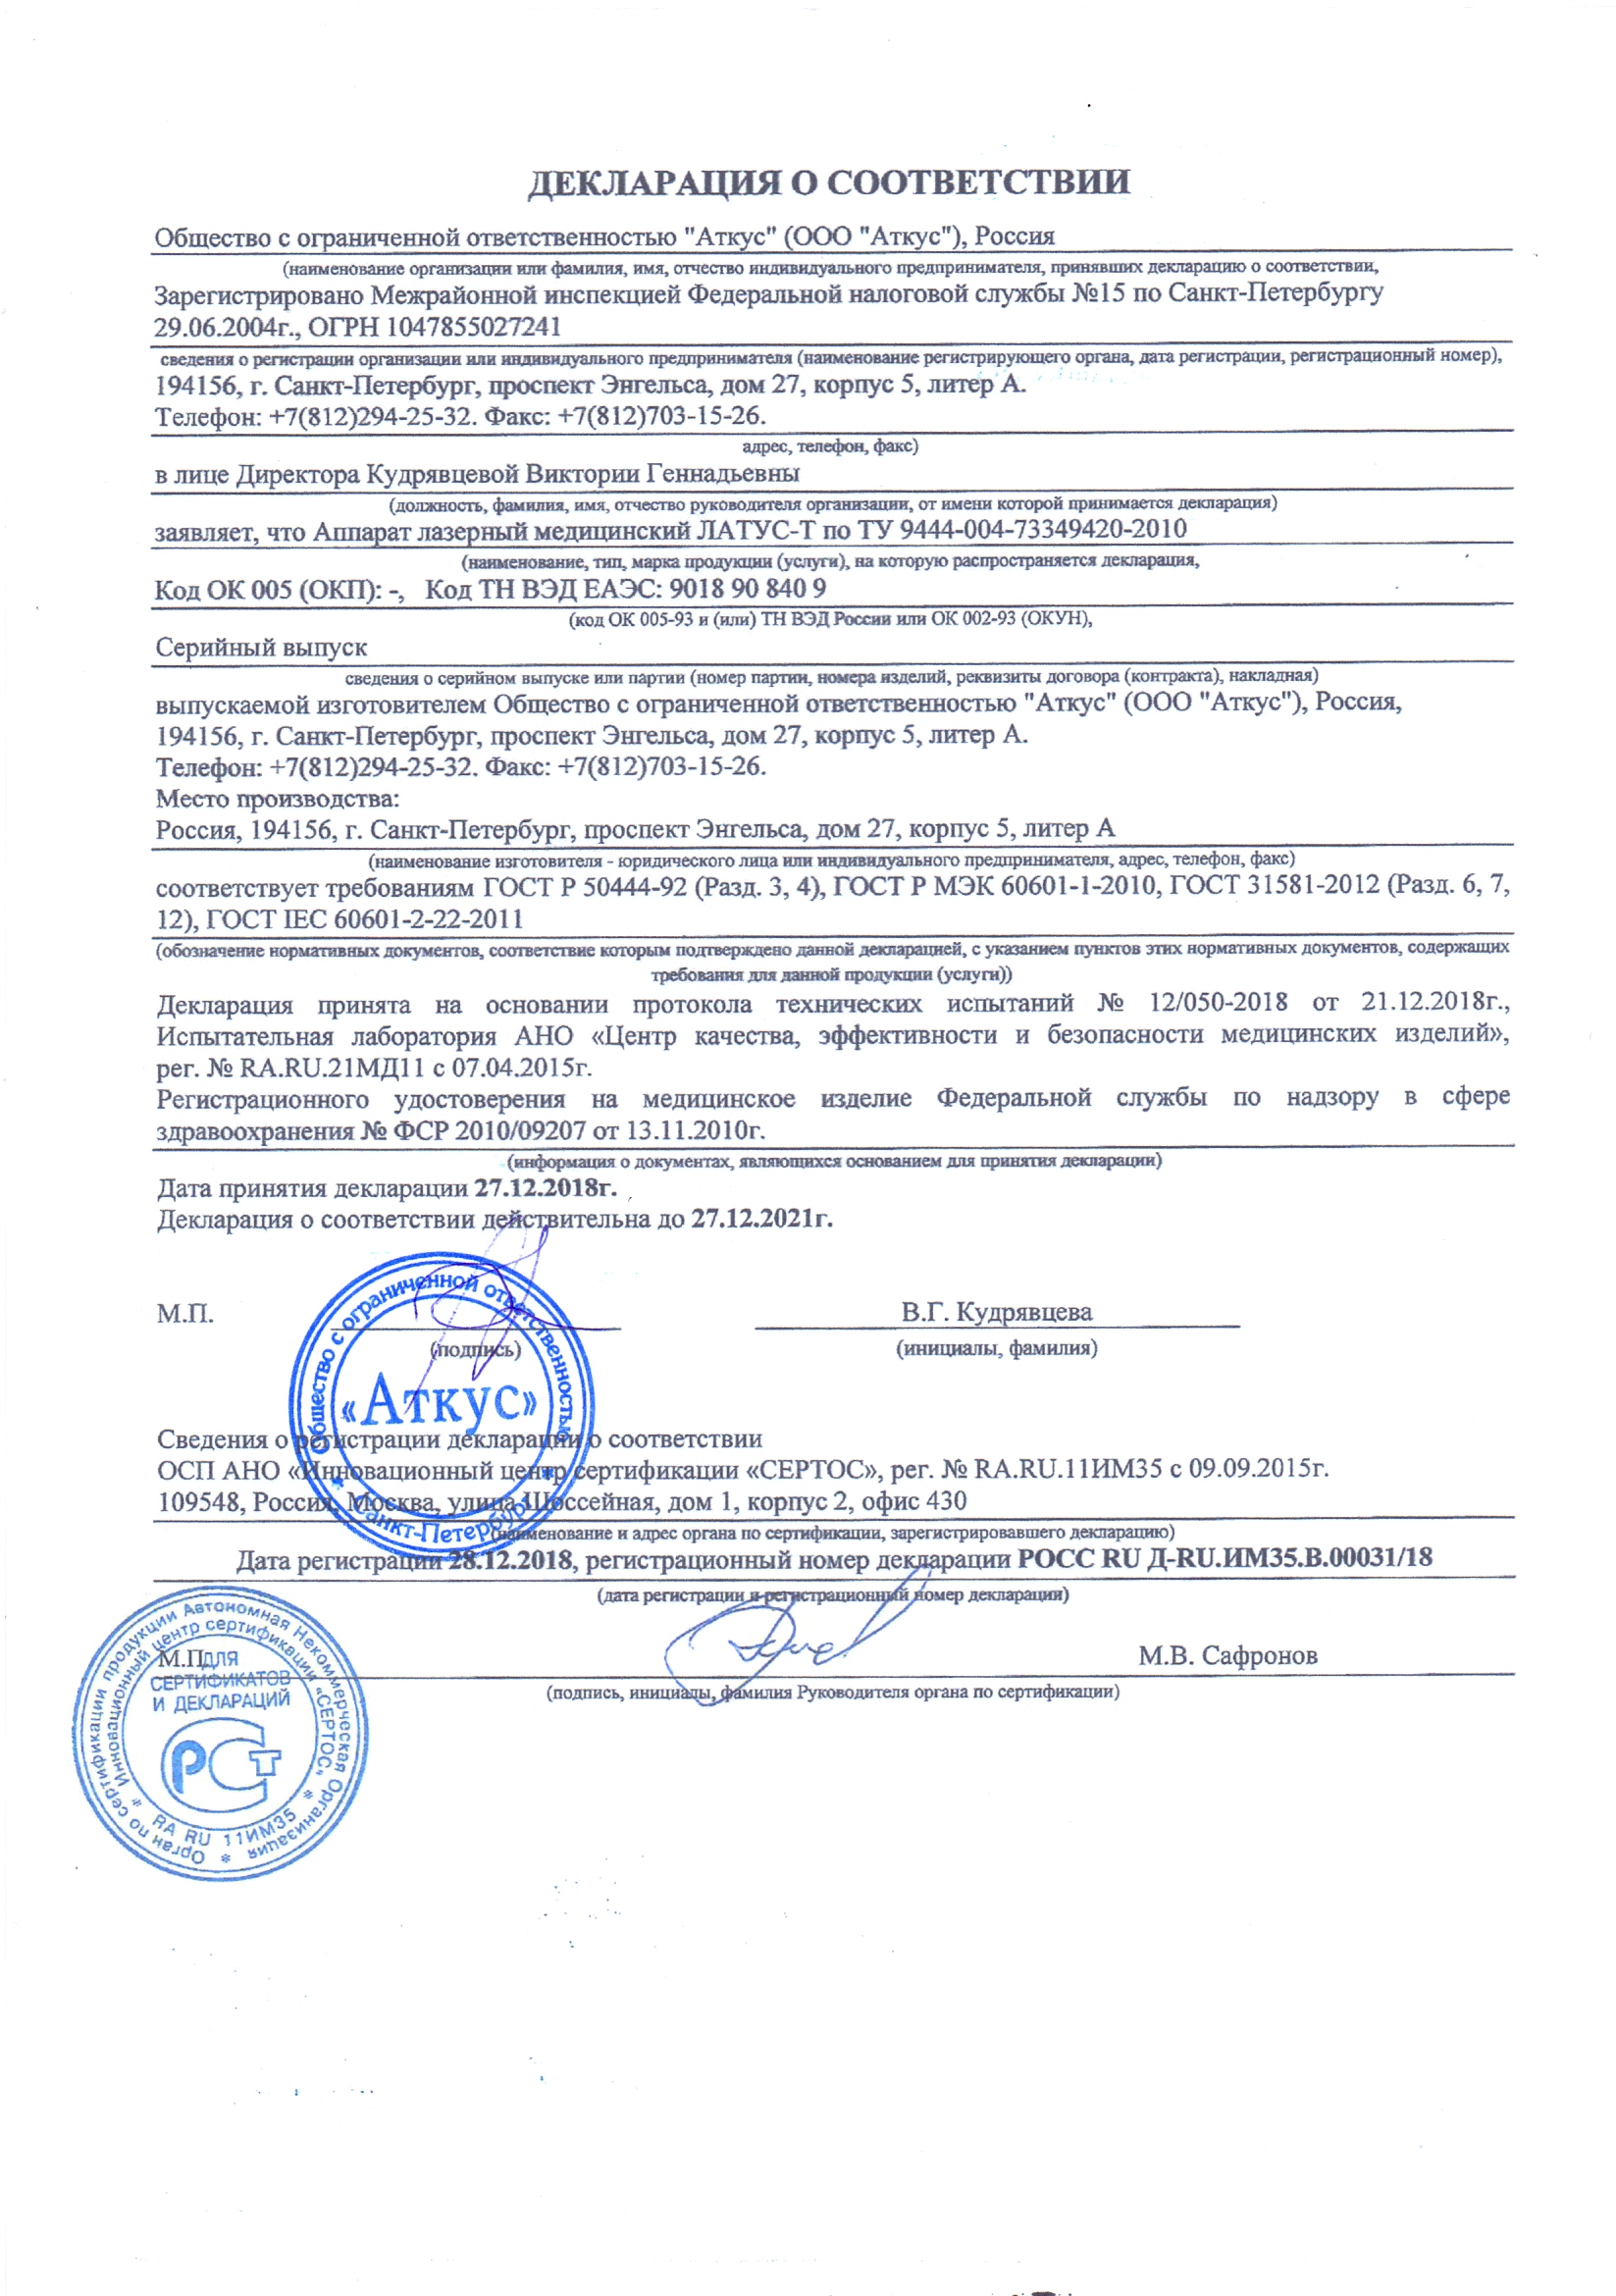 Декларация о соответствии Латус-Т.jpg